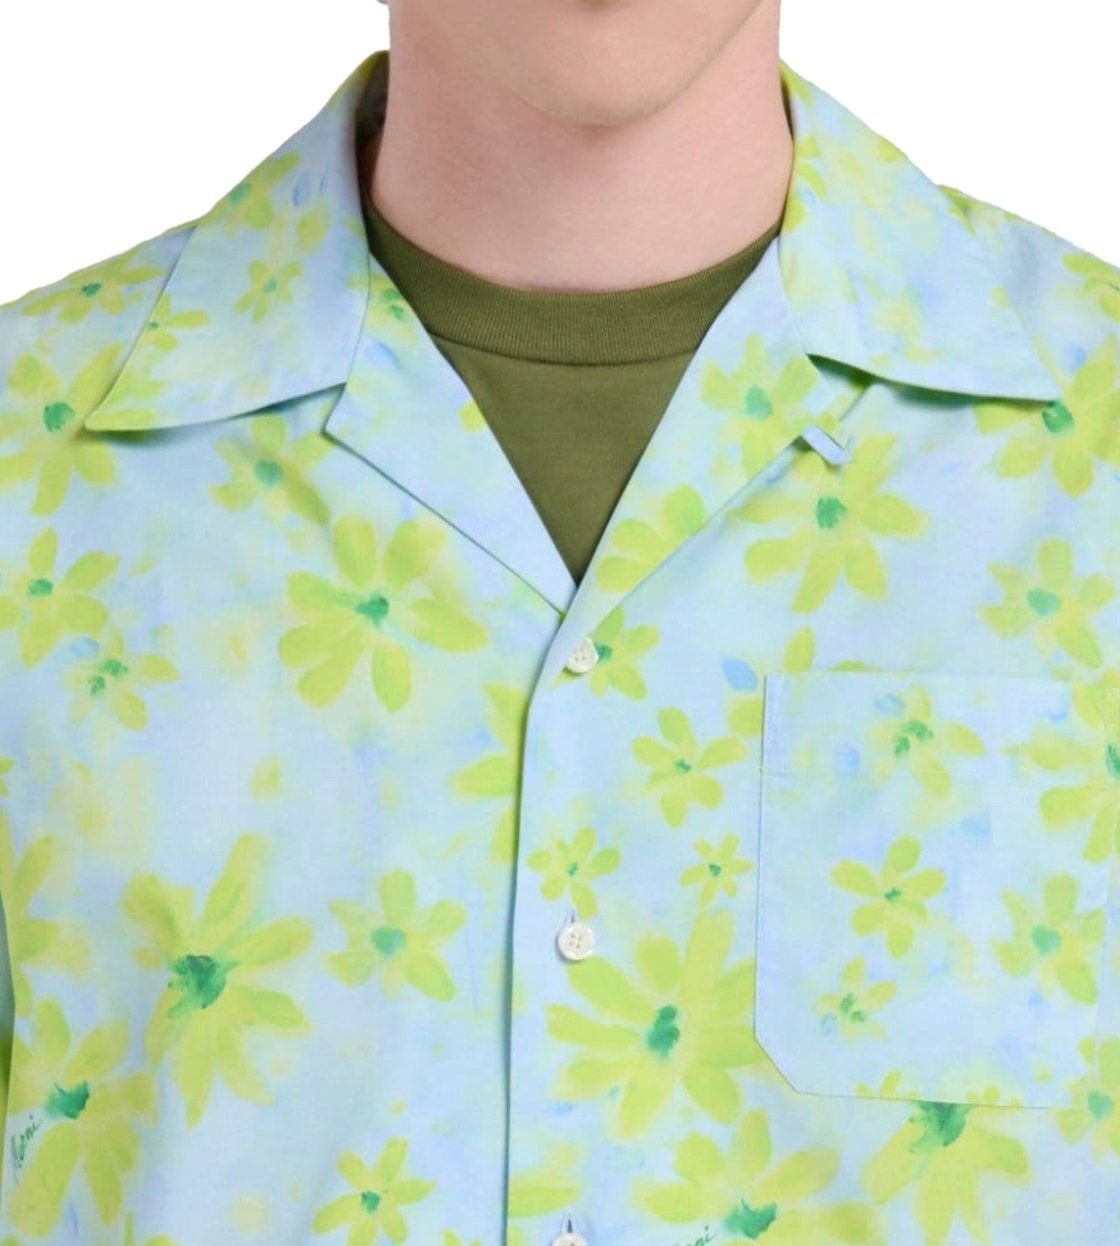 Marni Floral S/s Shirt - Light Blue/green Blauw